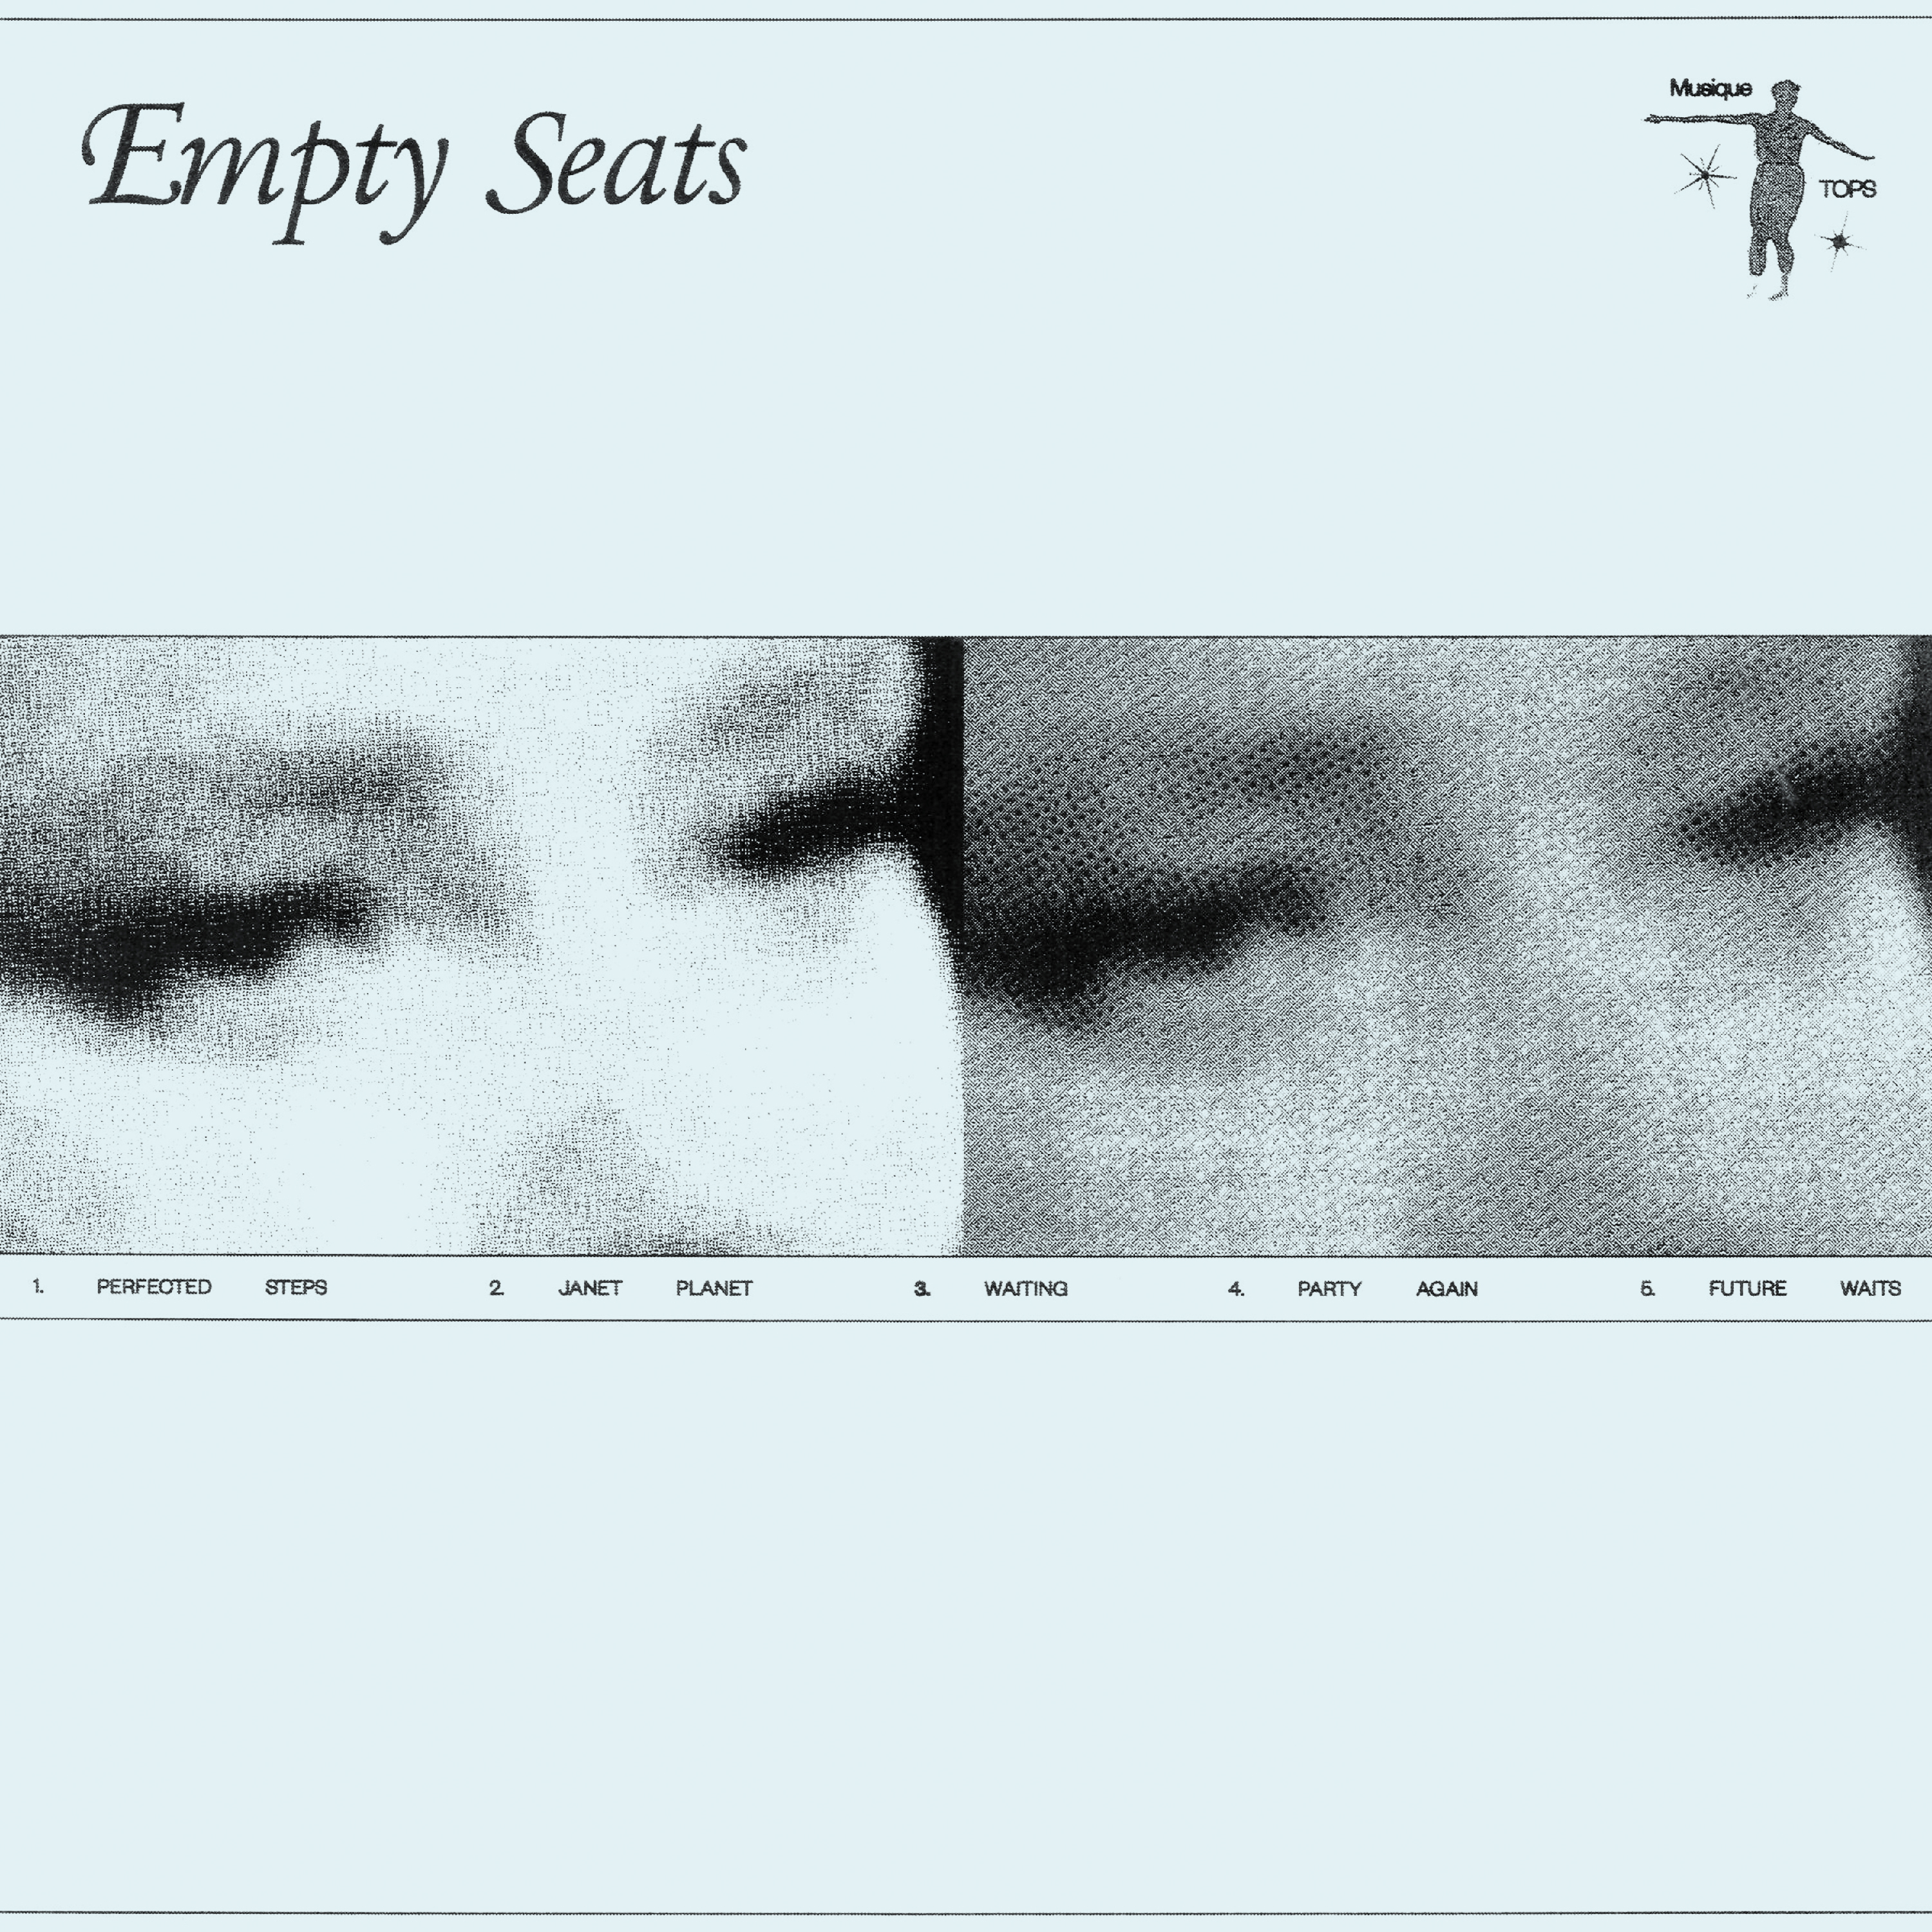 TOPS _Empty Seats_